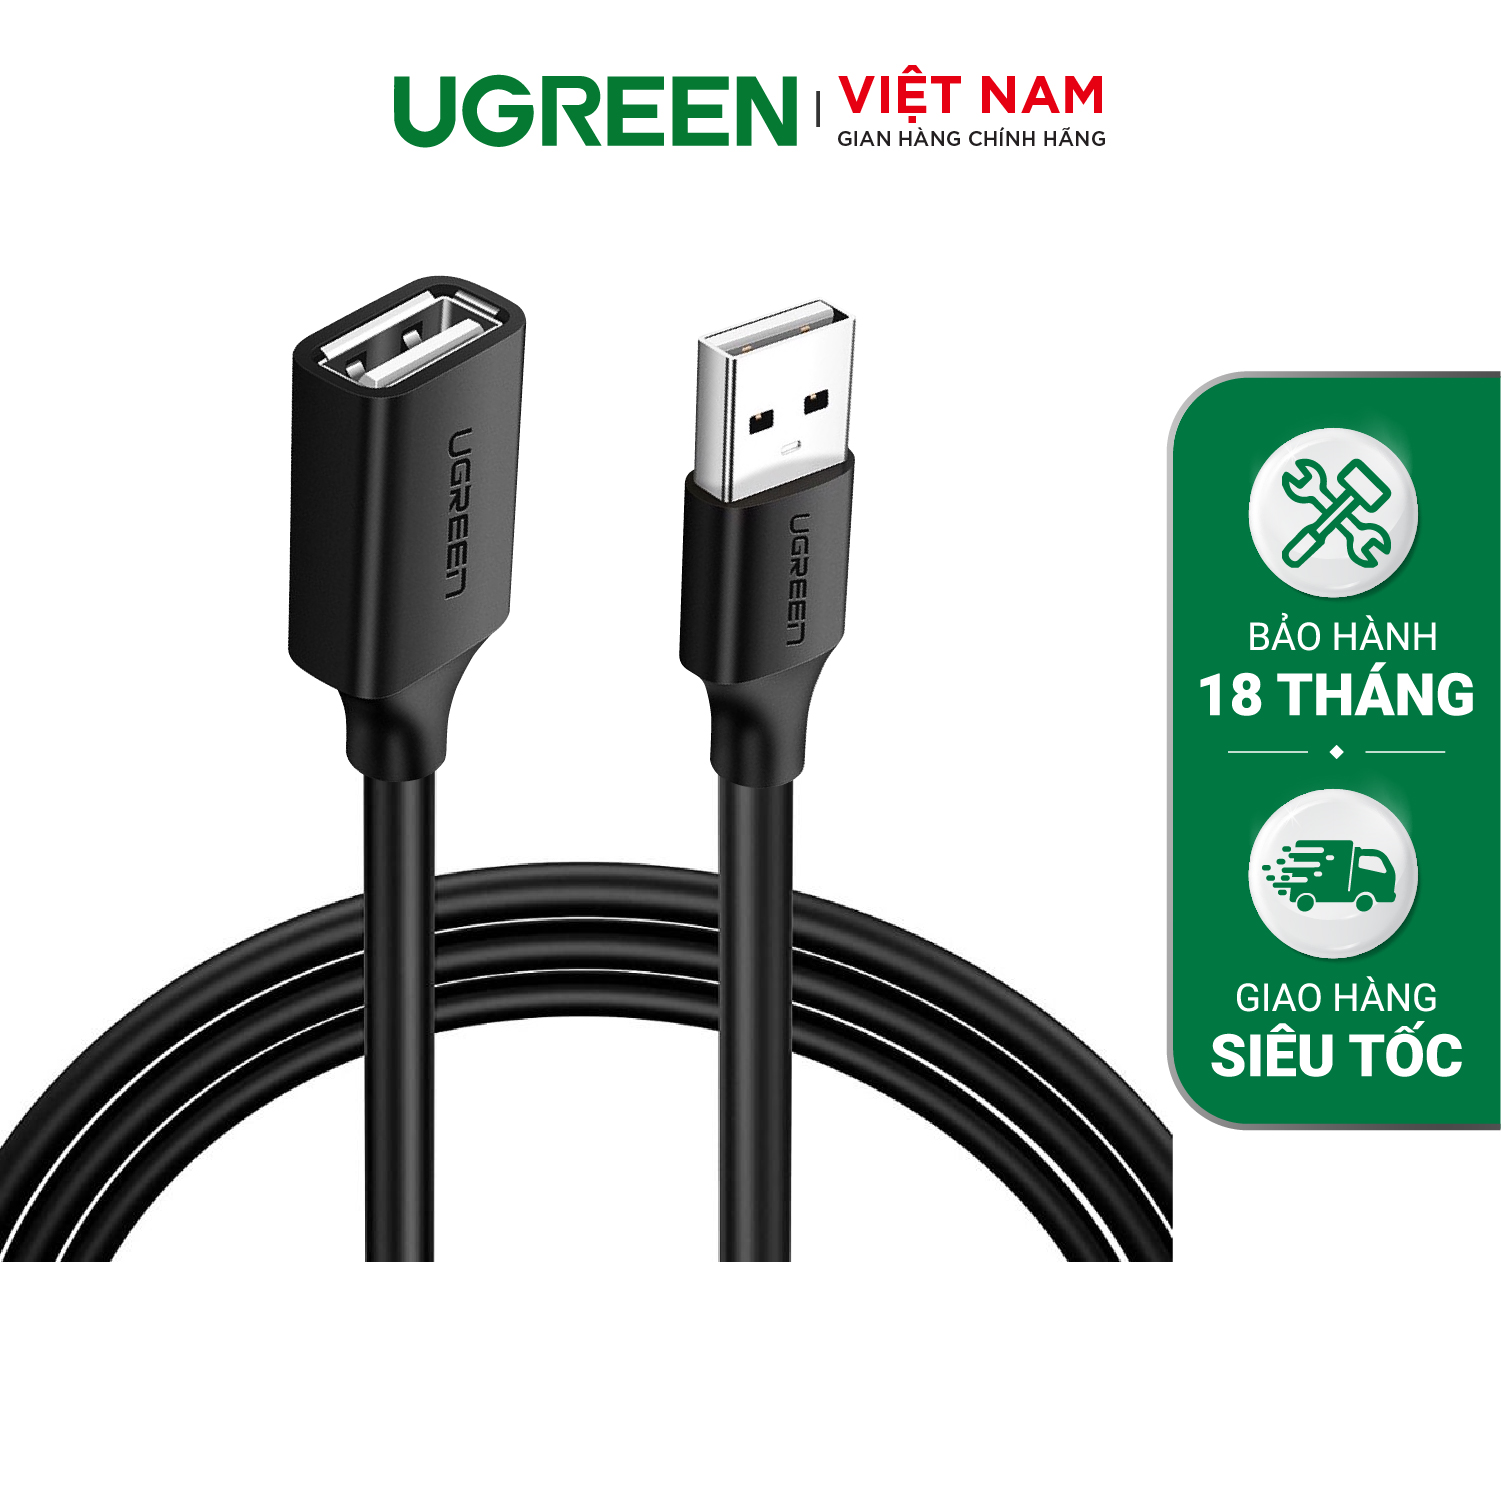 Cáp Nối Dài Ugreen USB 2.0 10313 (0.5m) - Hàng Chính Hãng